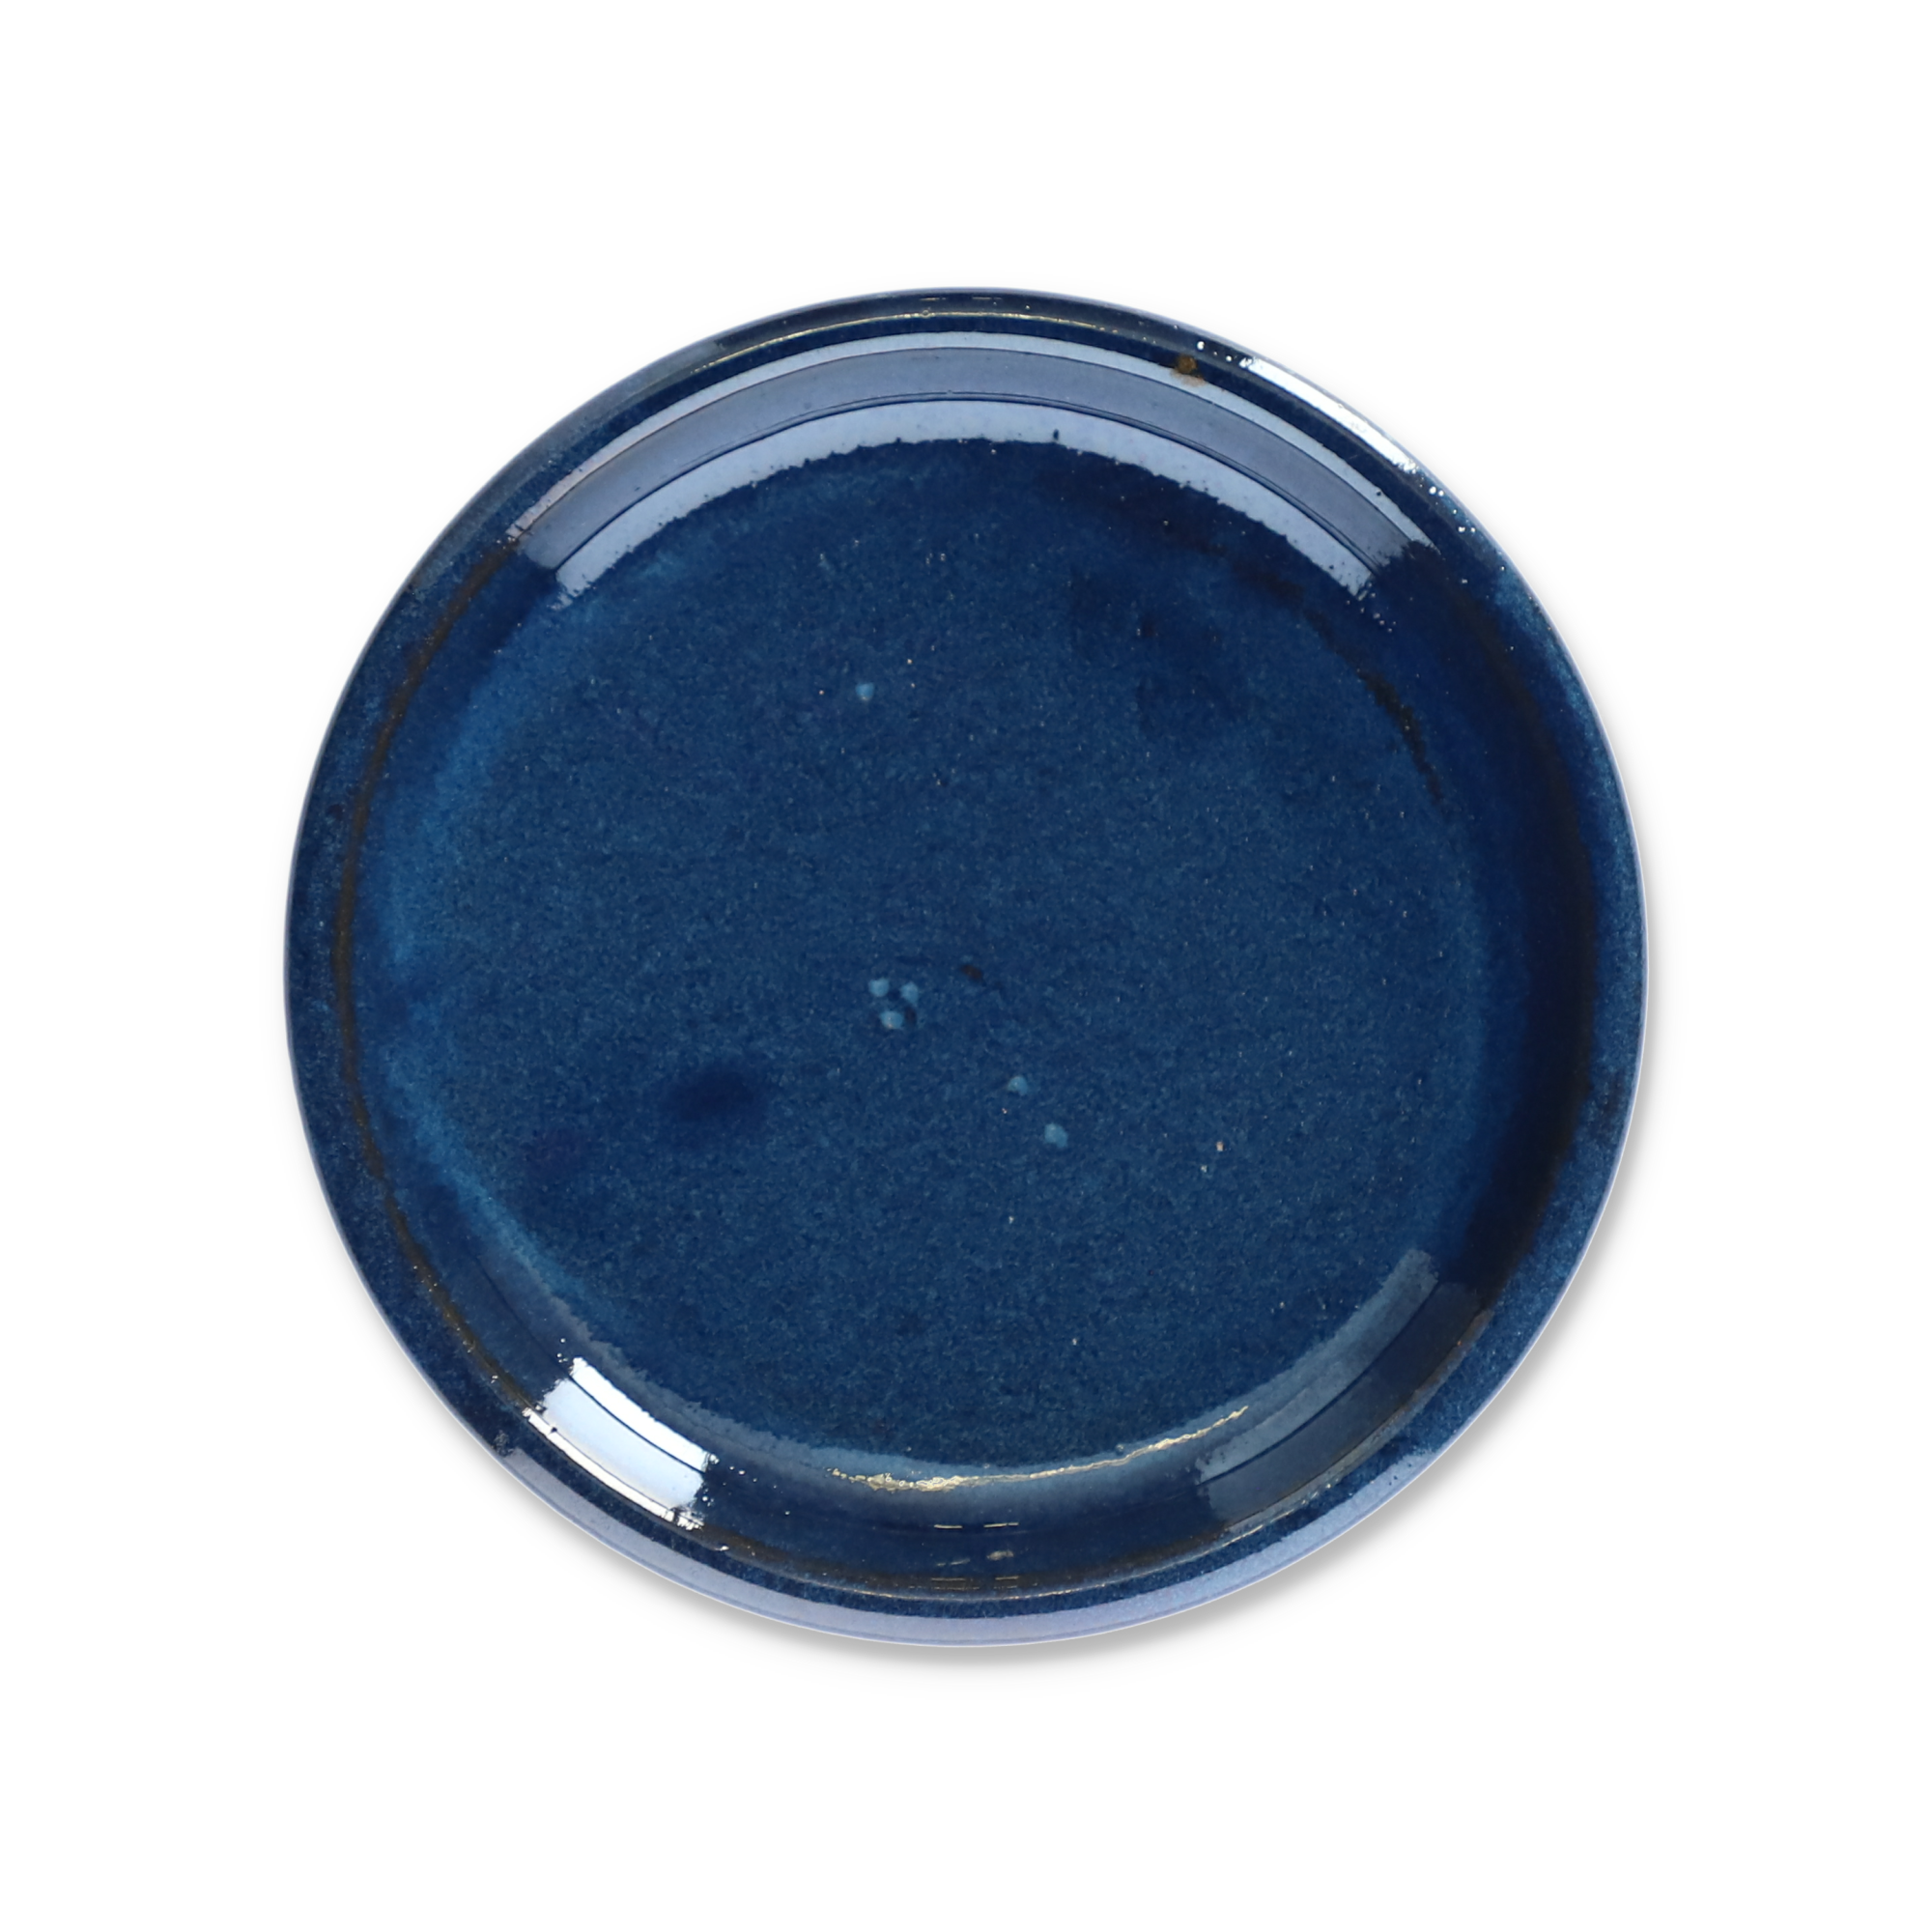 Untersetzer blau-grau Ø 25 cm + product picture